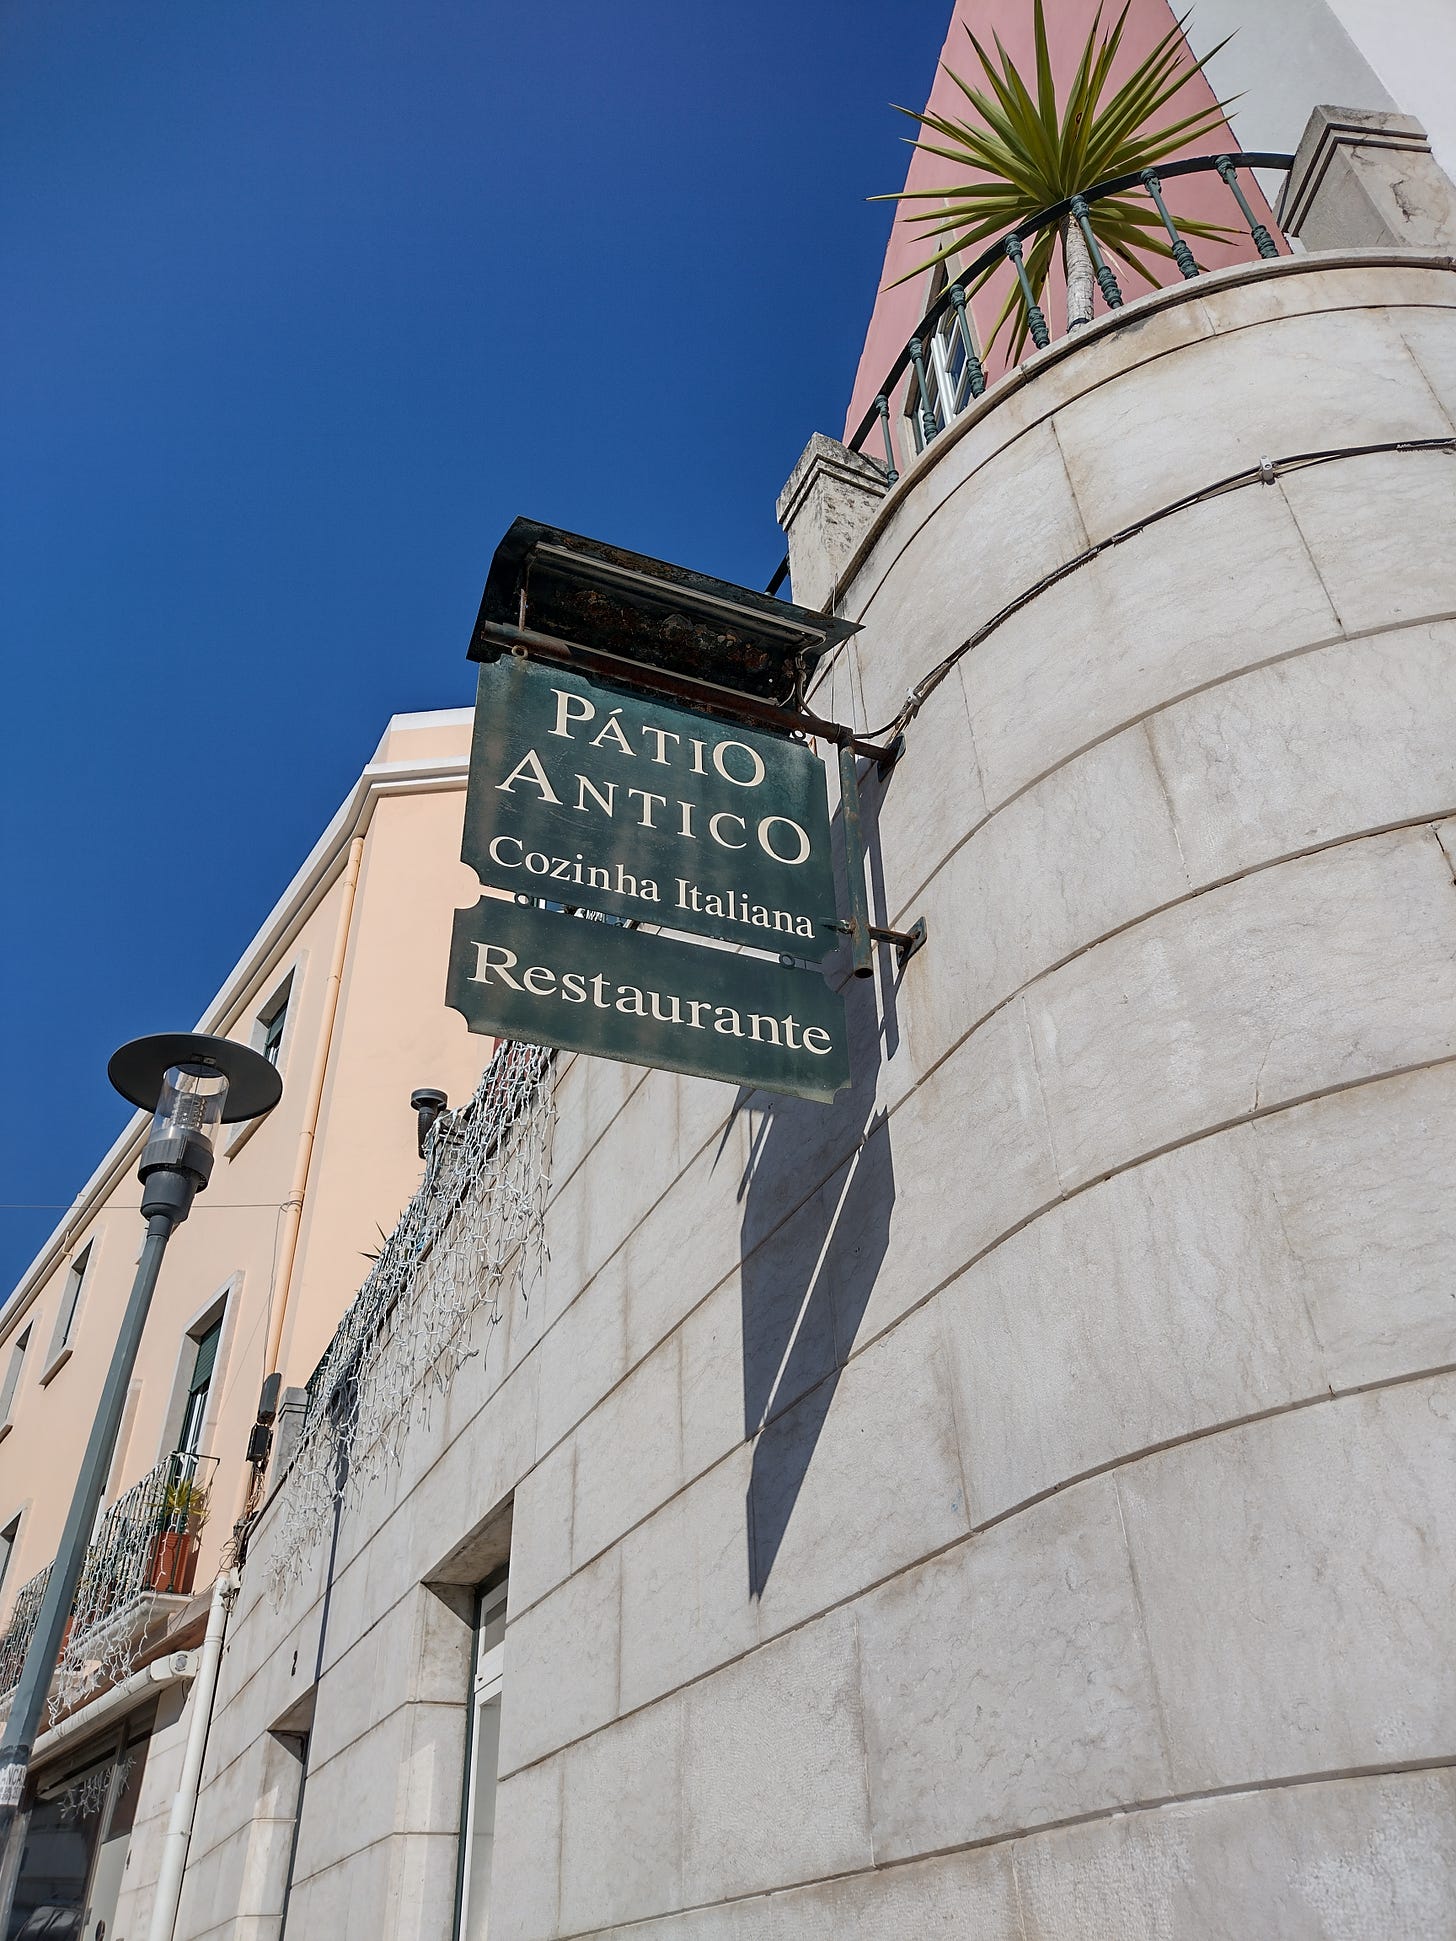 Patio Antico Restaurant Sign.